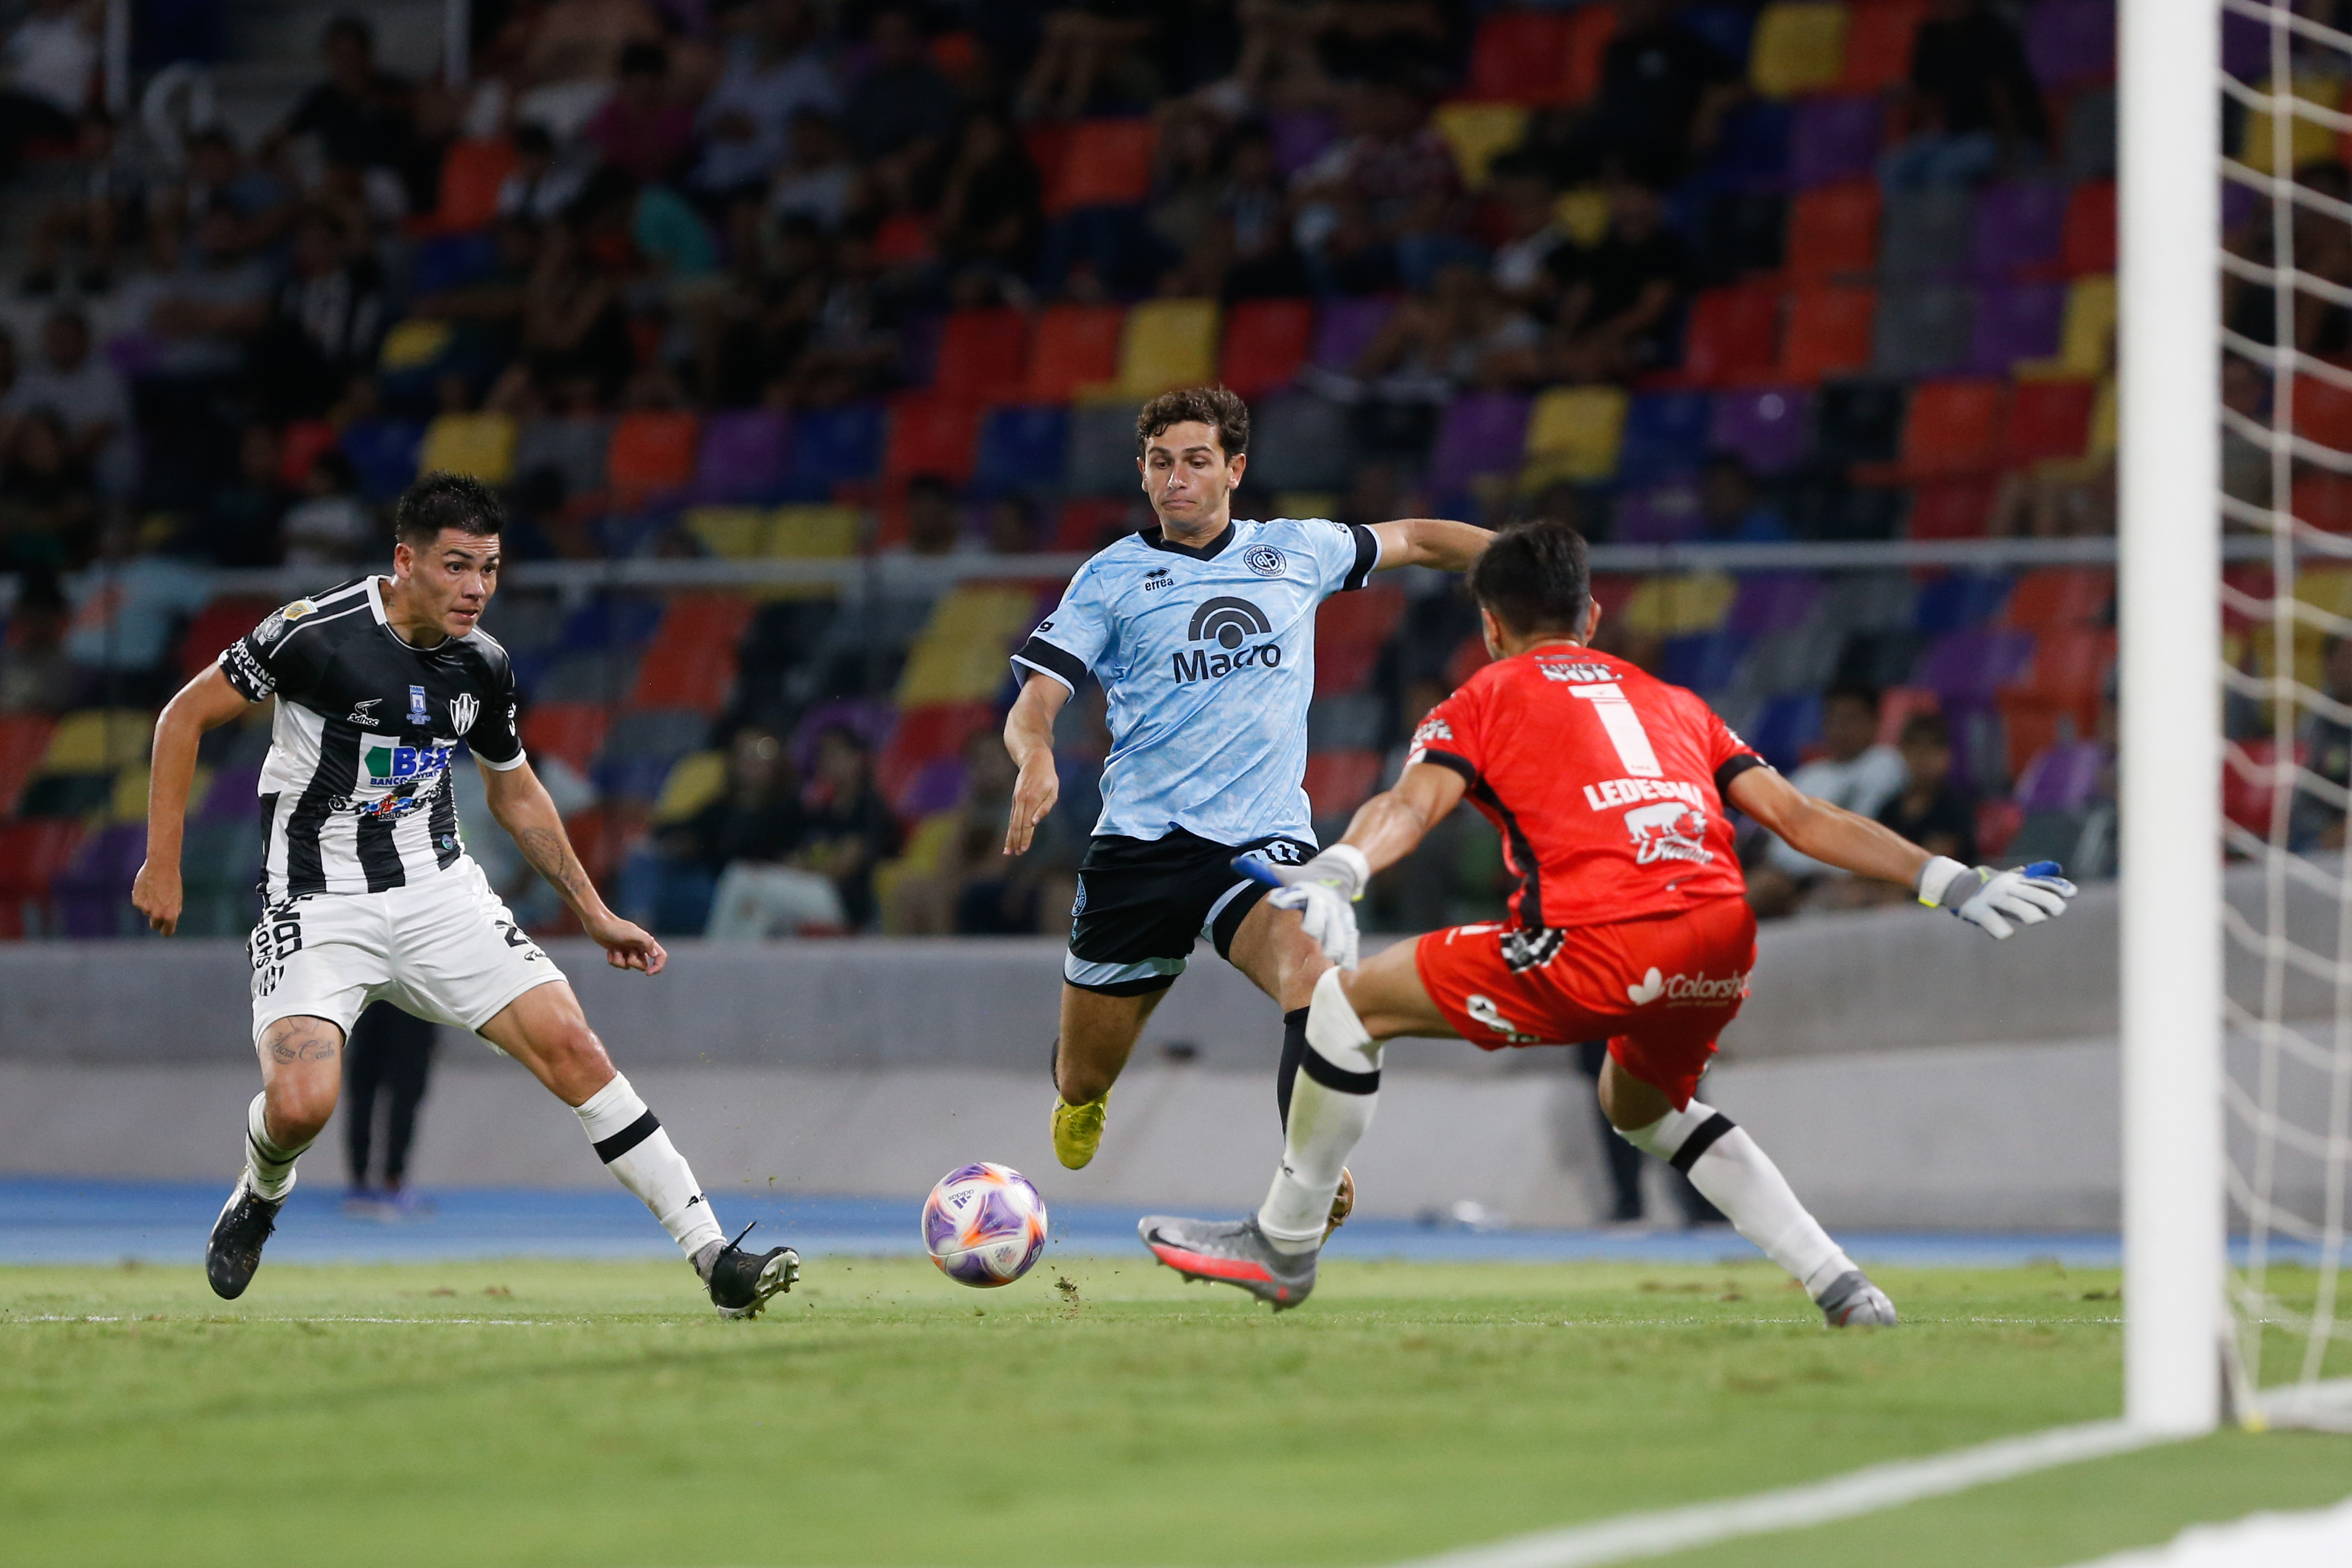 El jugador de Belgrano que se iría a otro equipo de la Liga Profesional | Canal Showsport